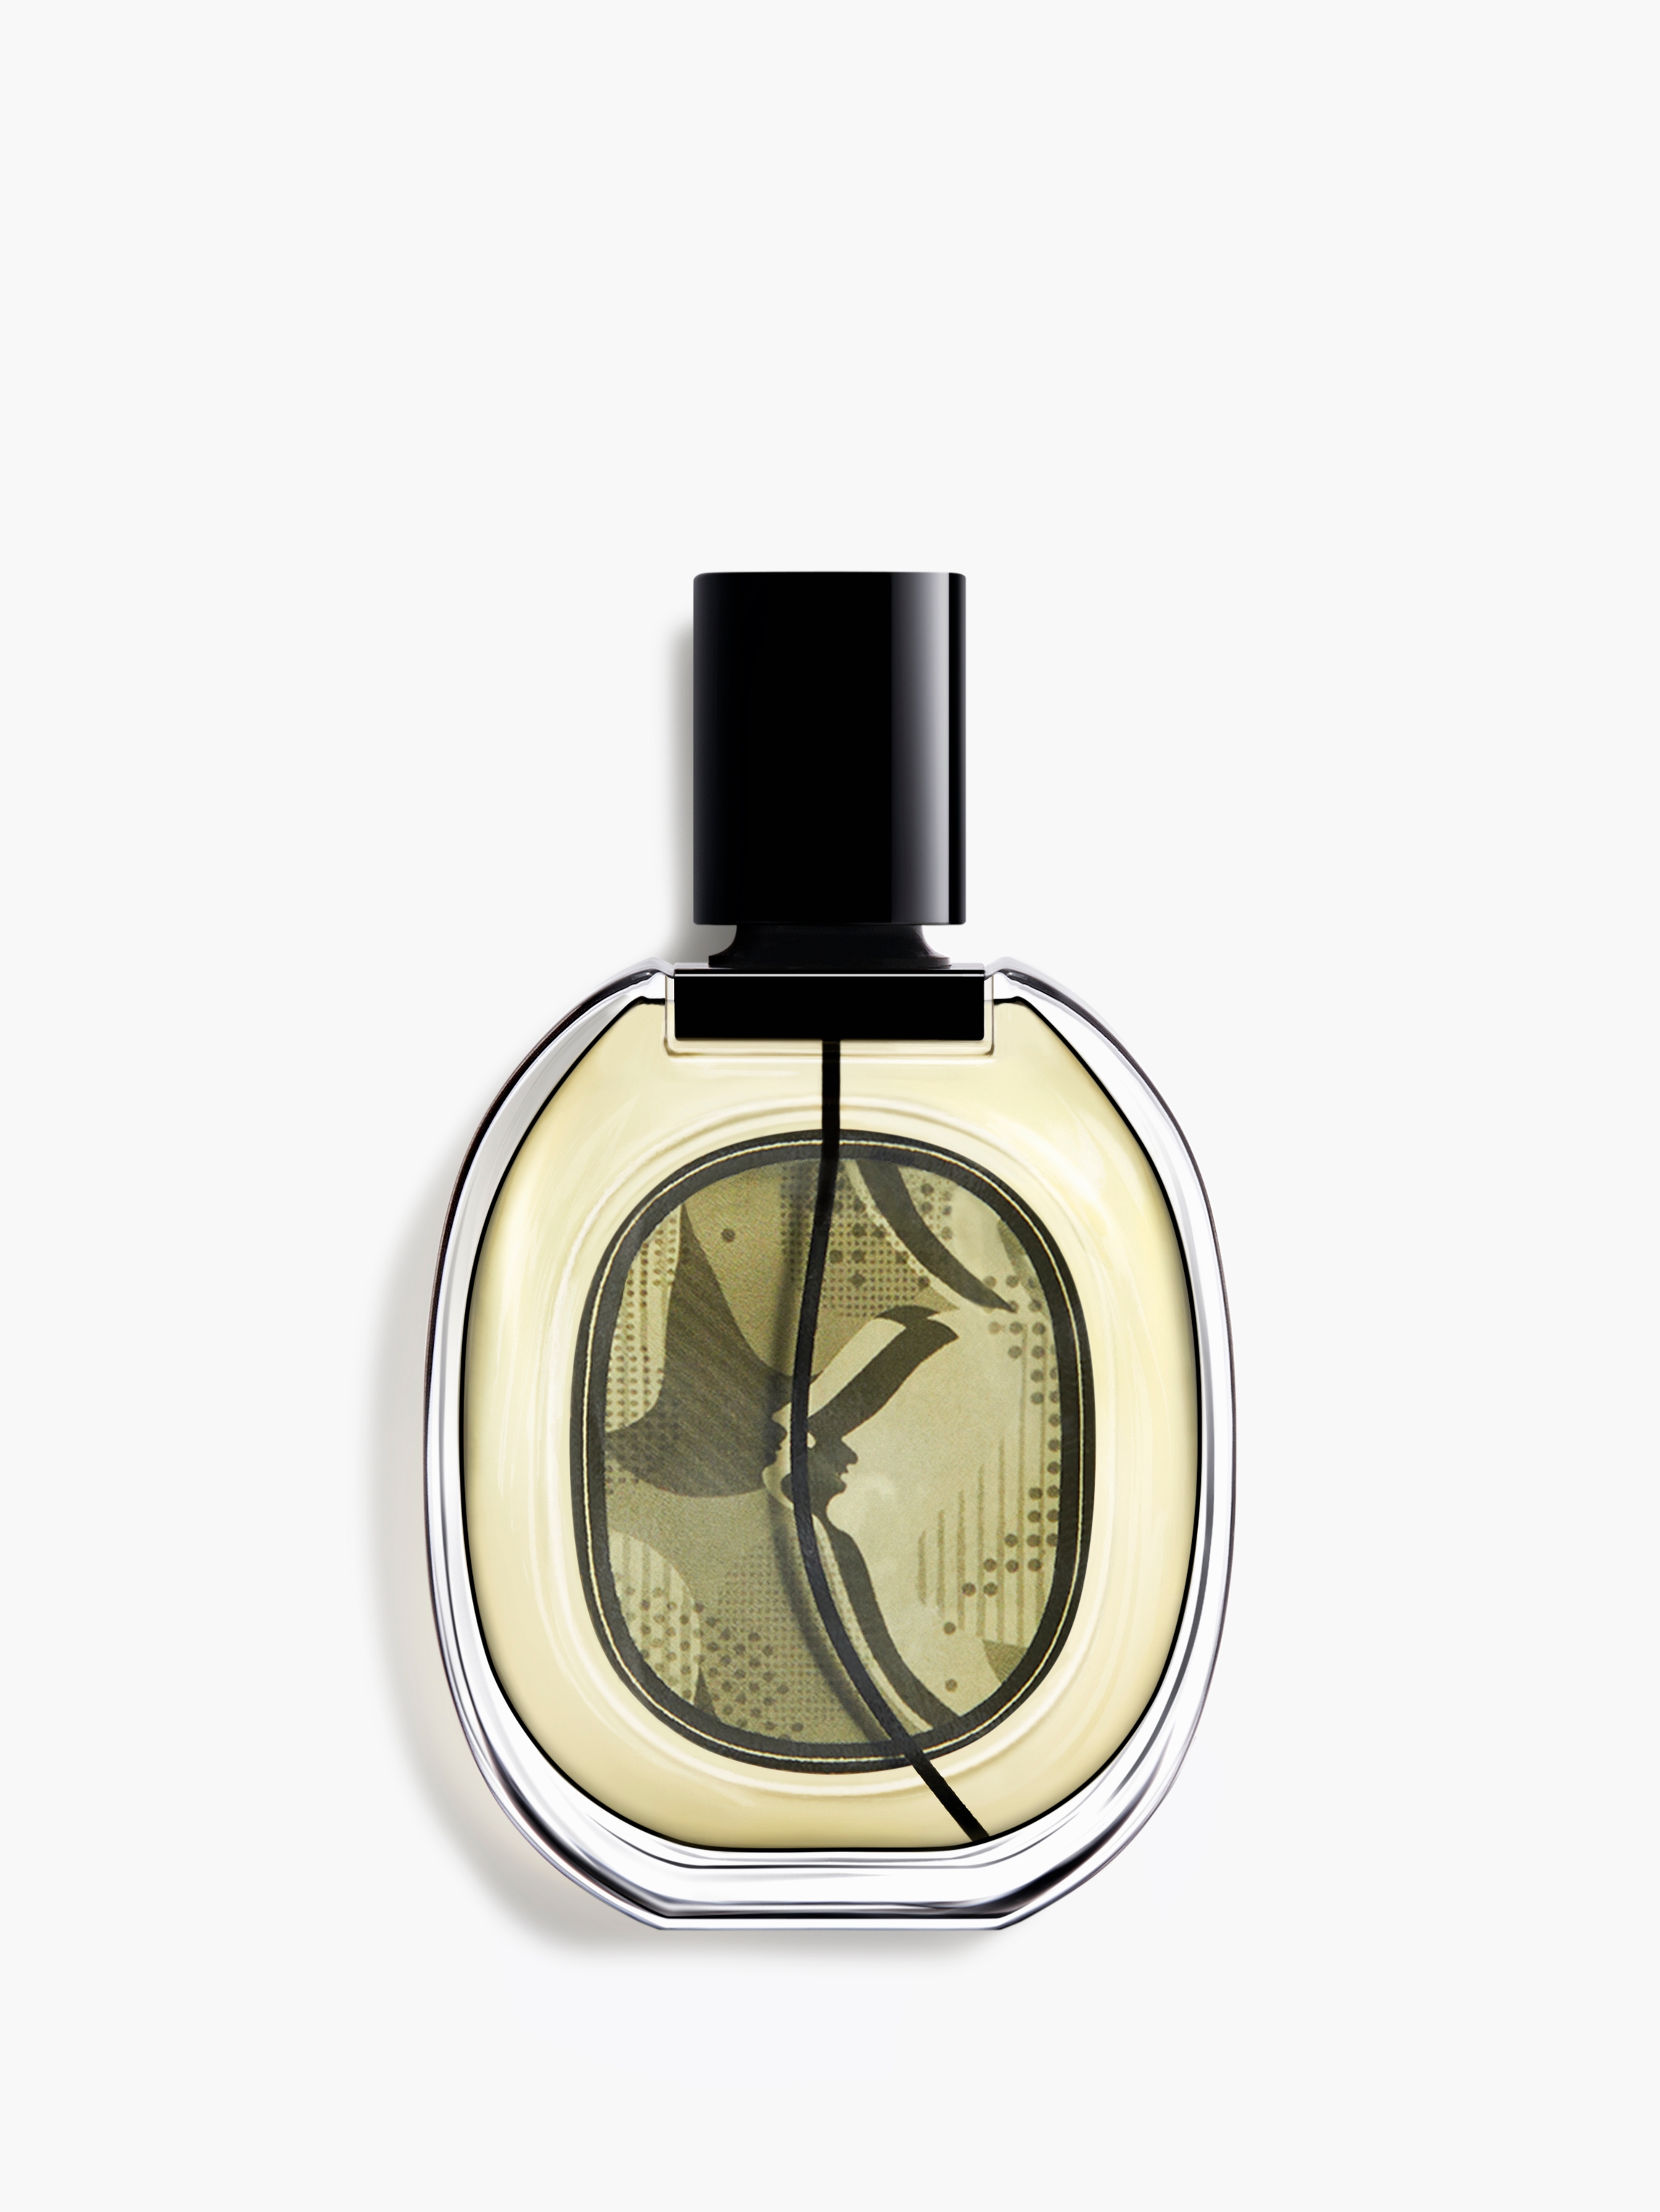 unique perfume bottle